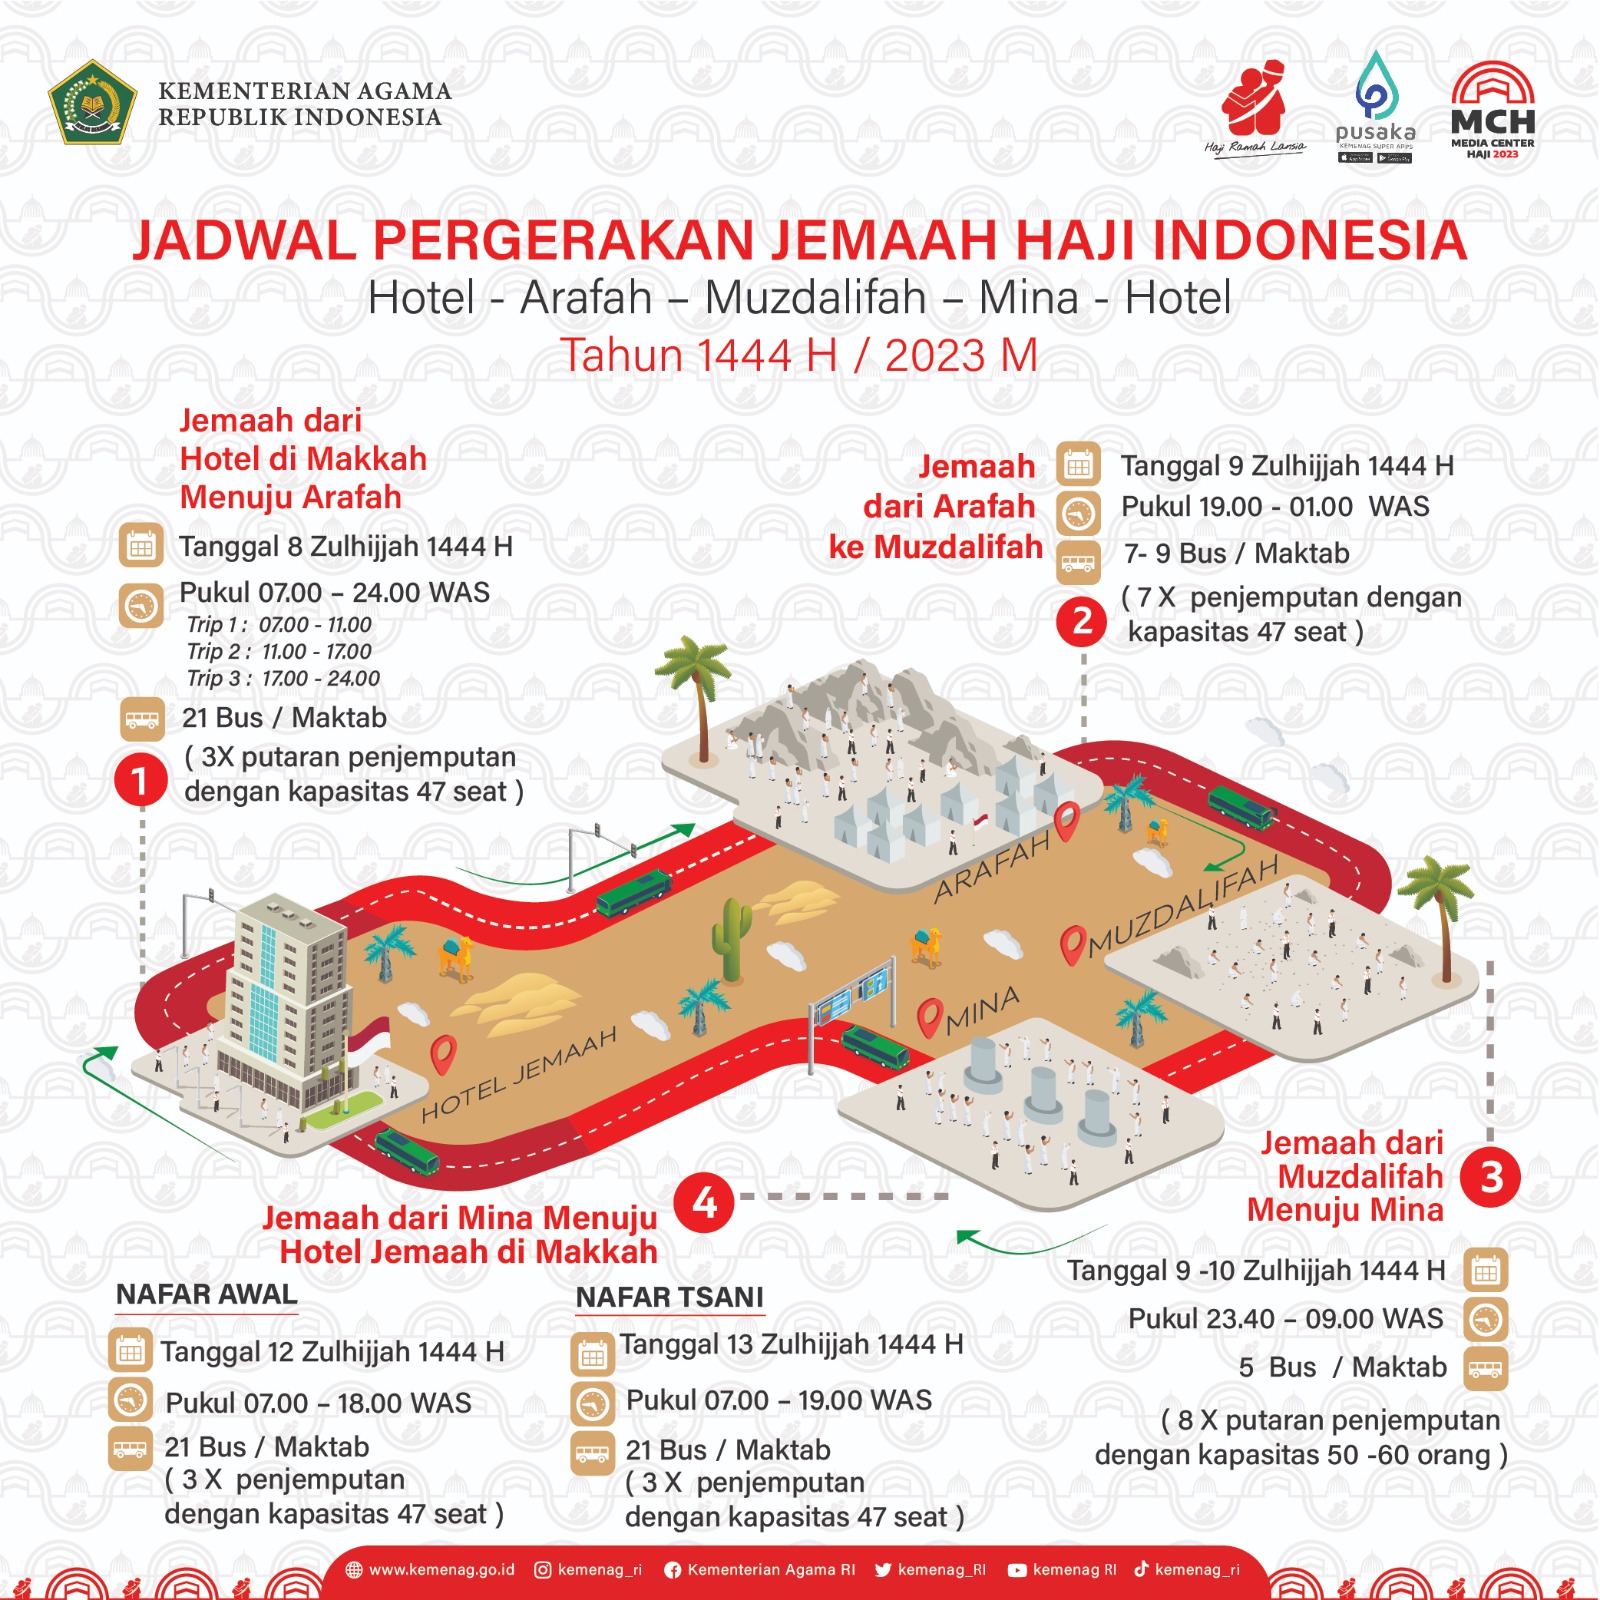 Jadwal pergerakan jemaah haji Indonesia saat puncak haji.